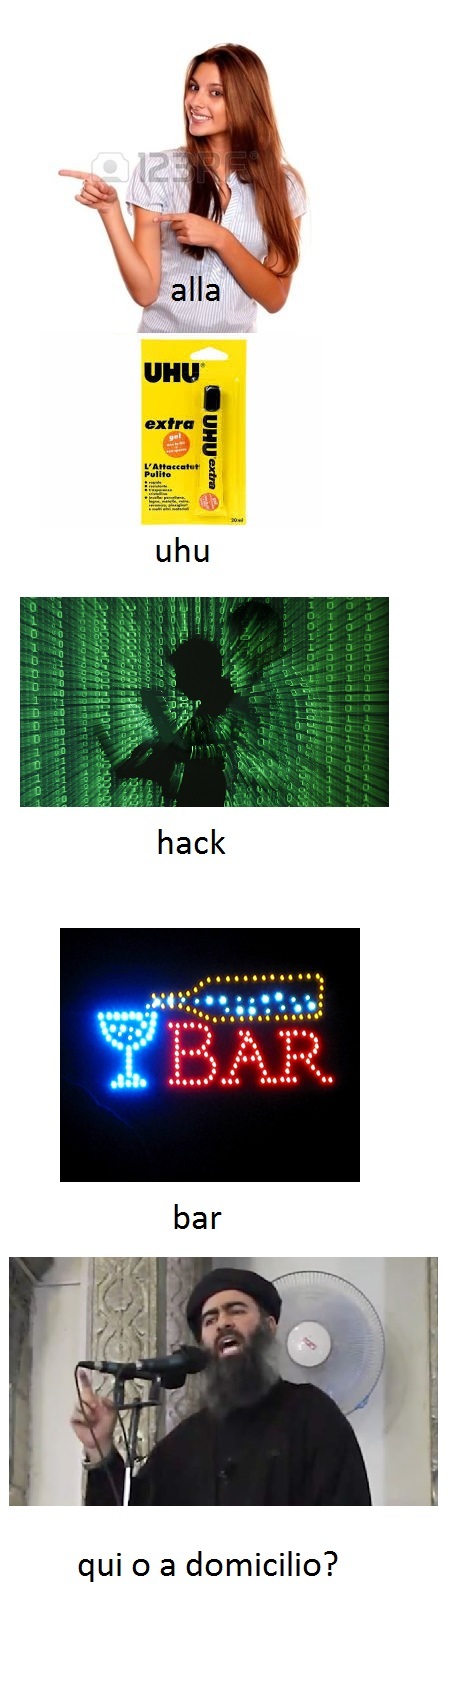 Alla-uhu-hack-bar - meme